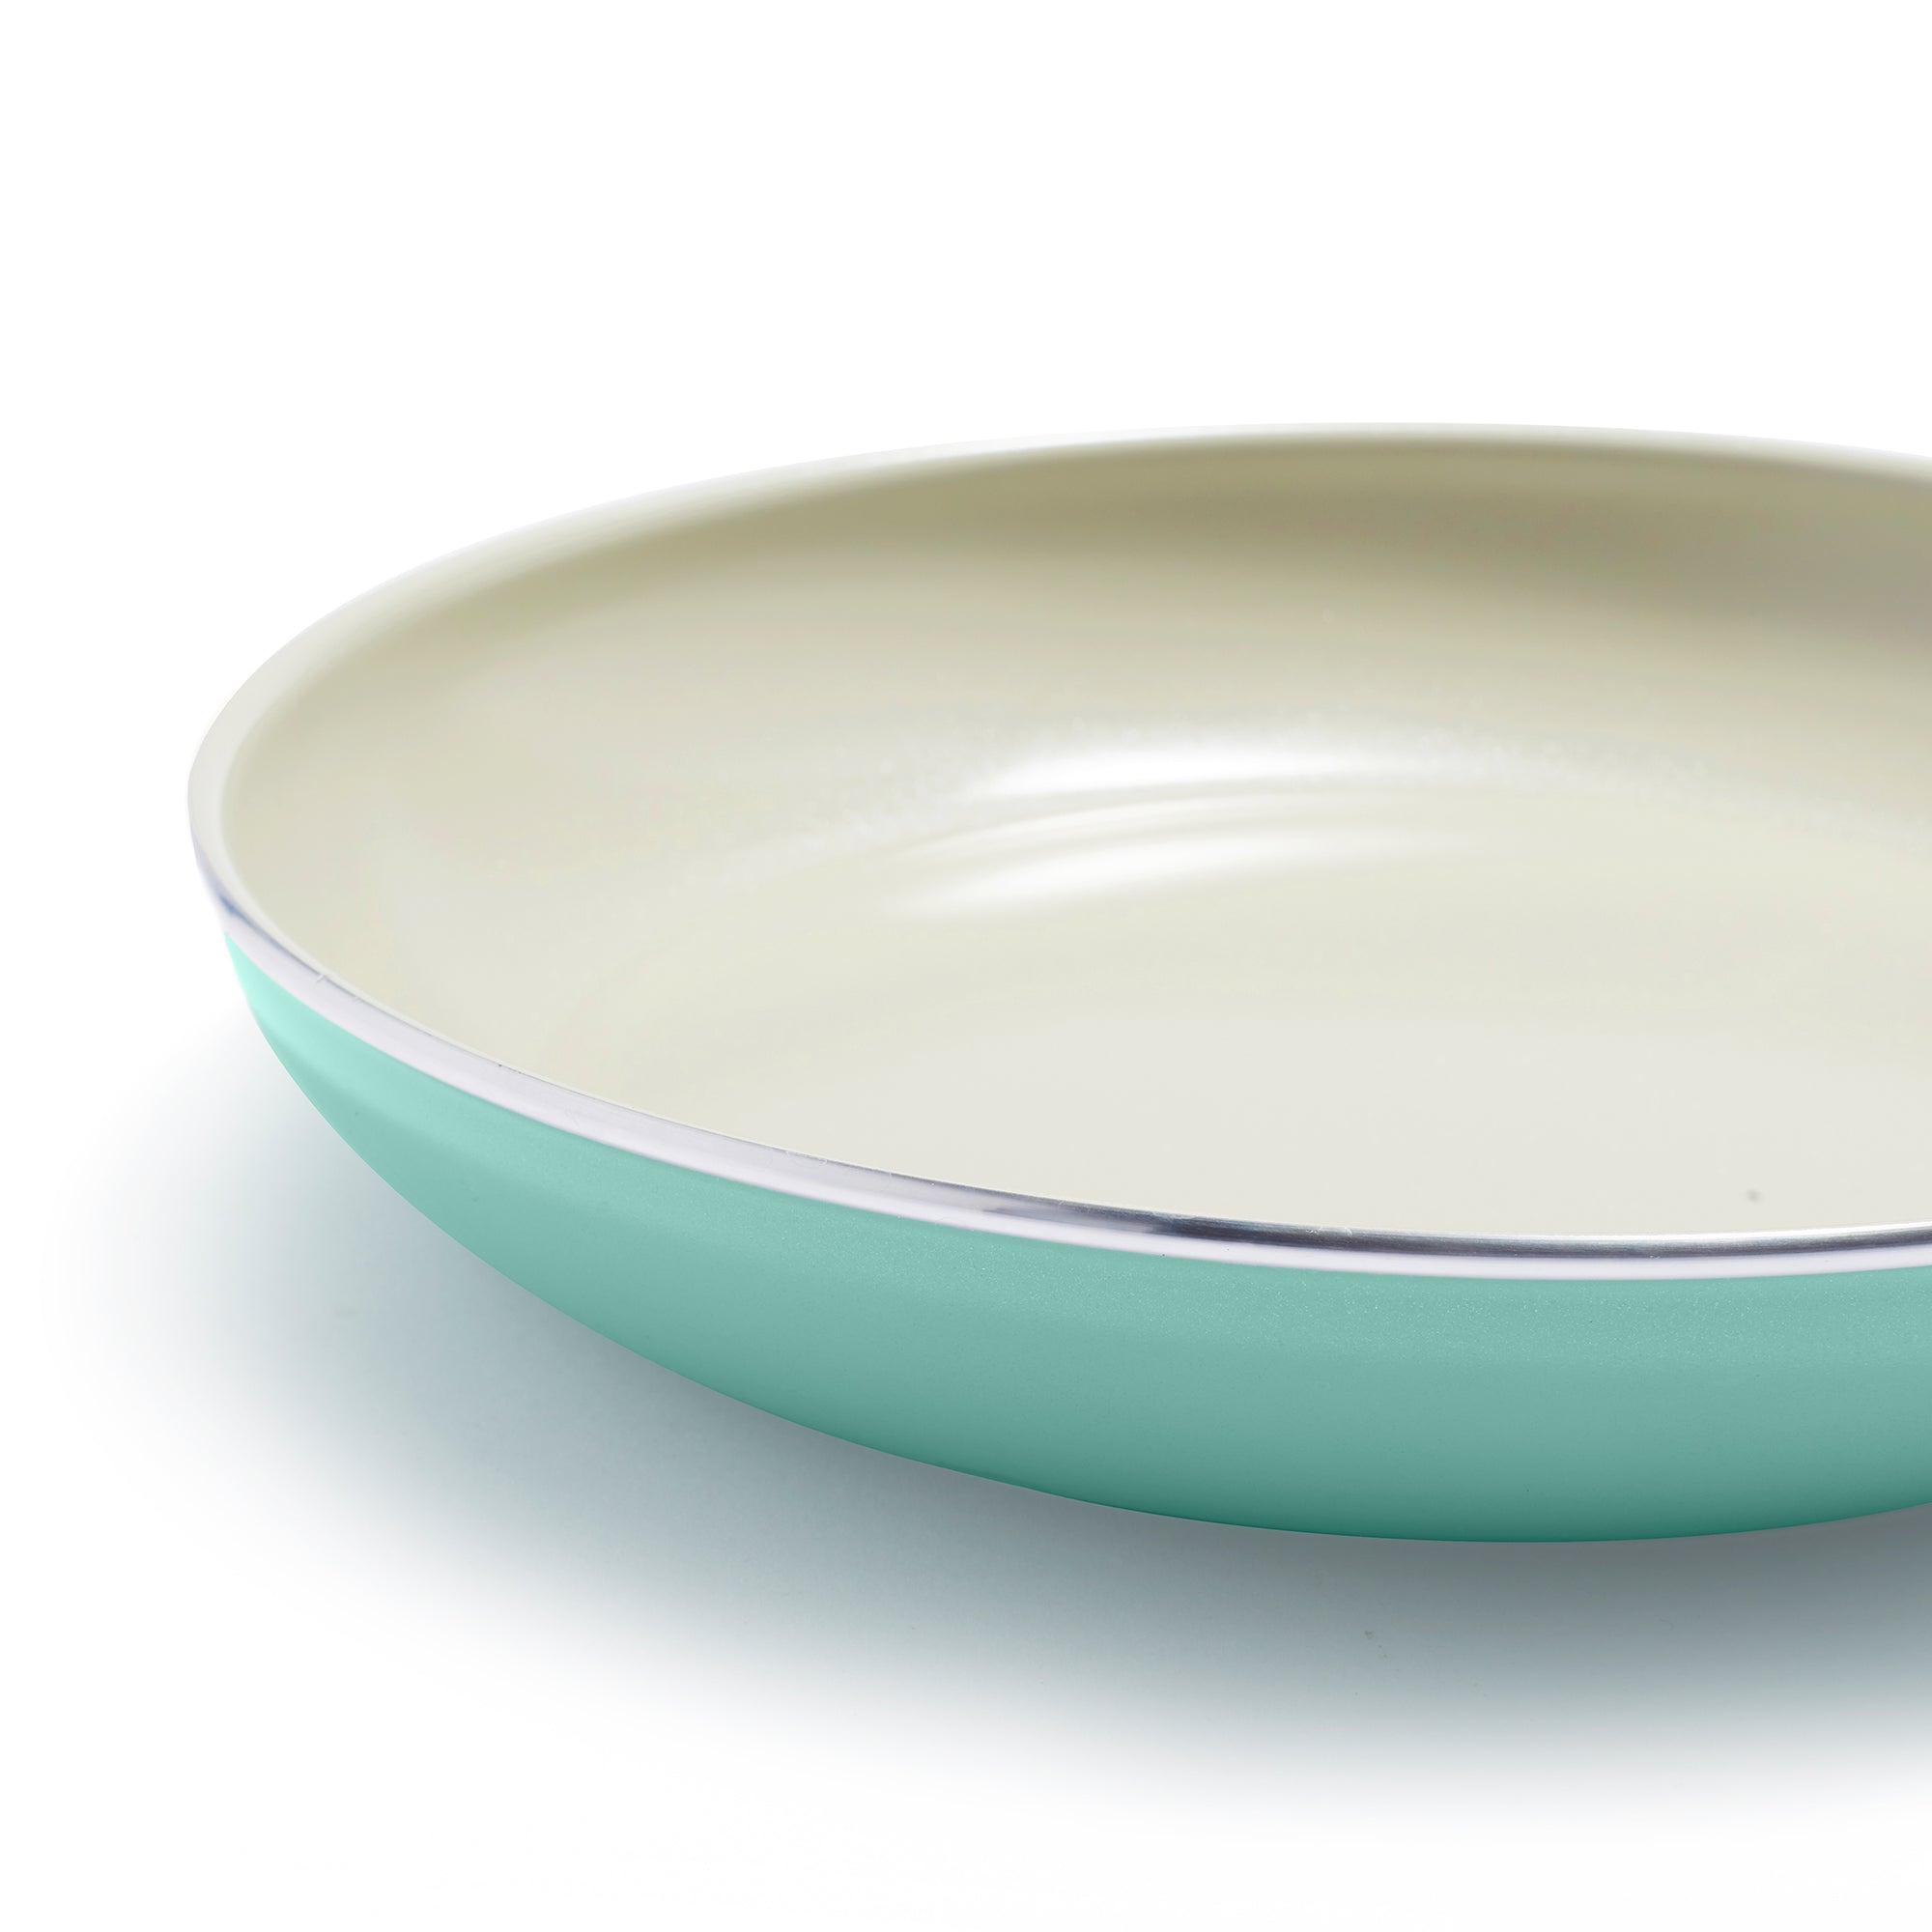 Cook's Essentials Porcelain 6-qt Oval Pasta Pot 